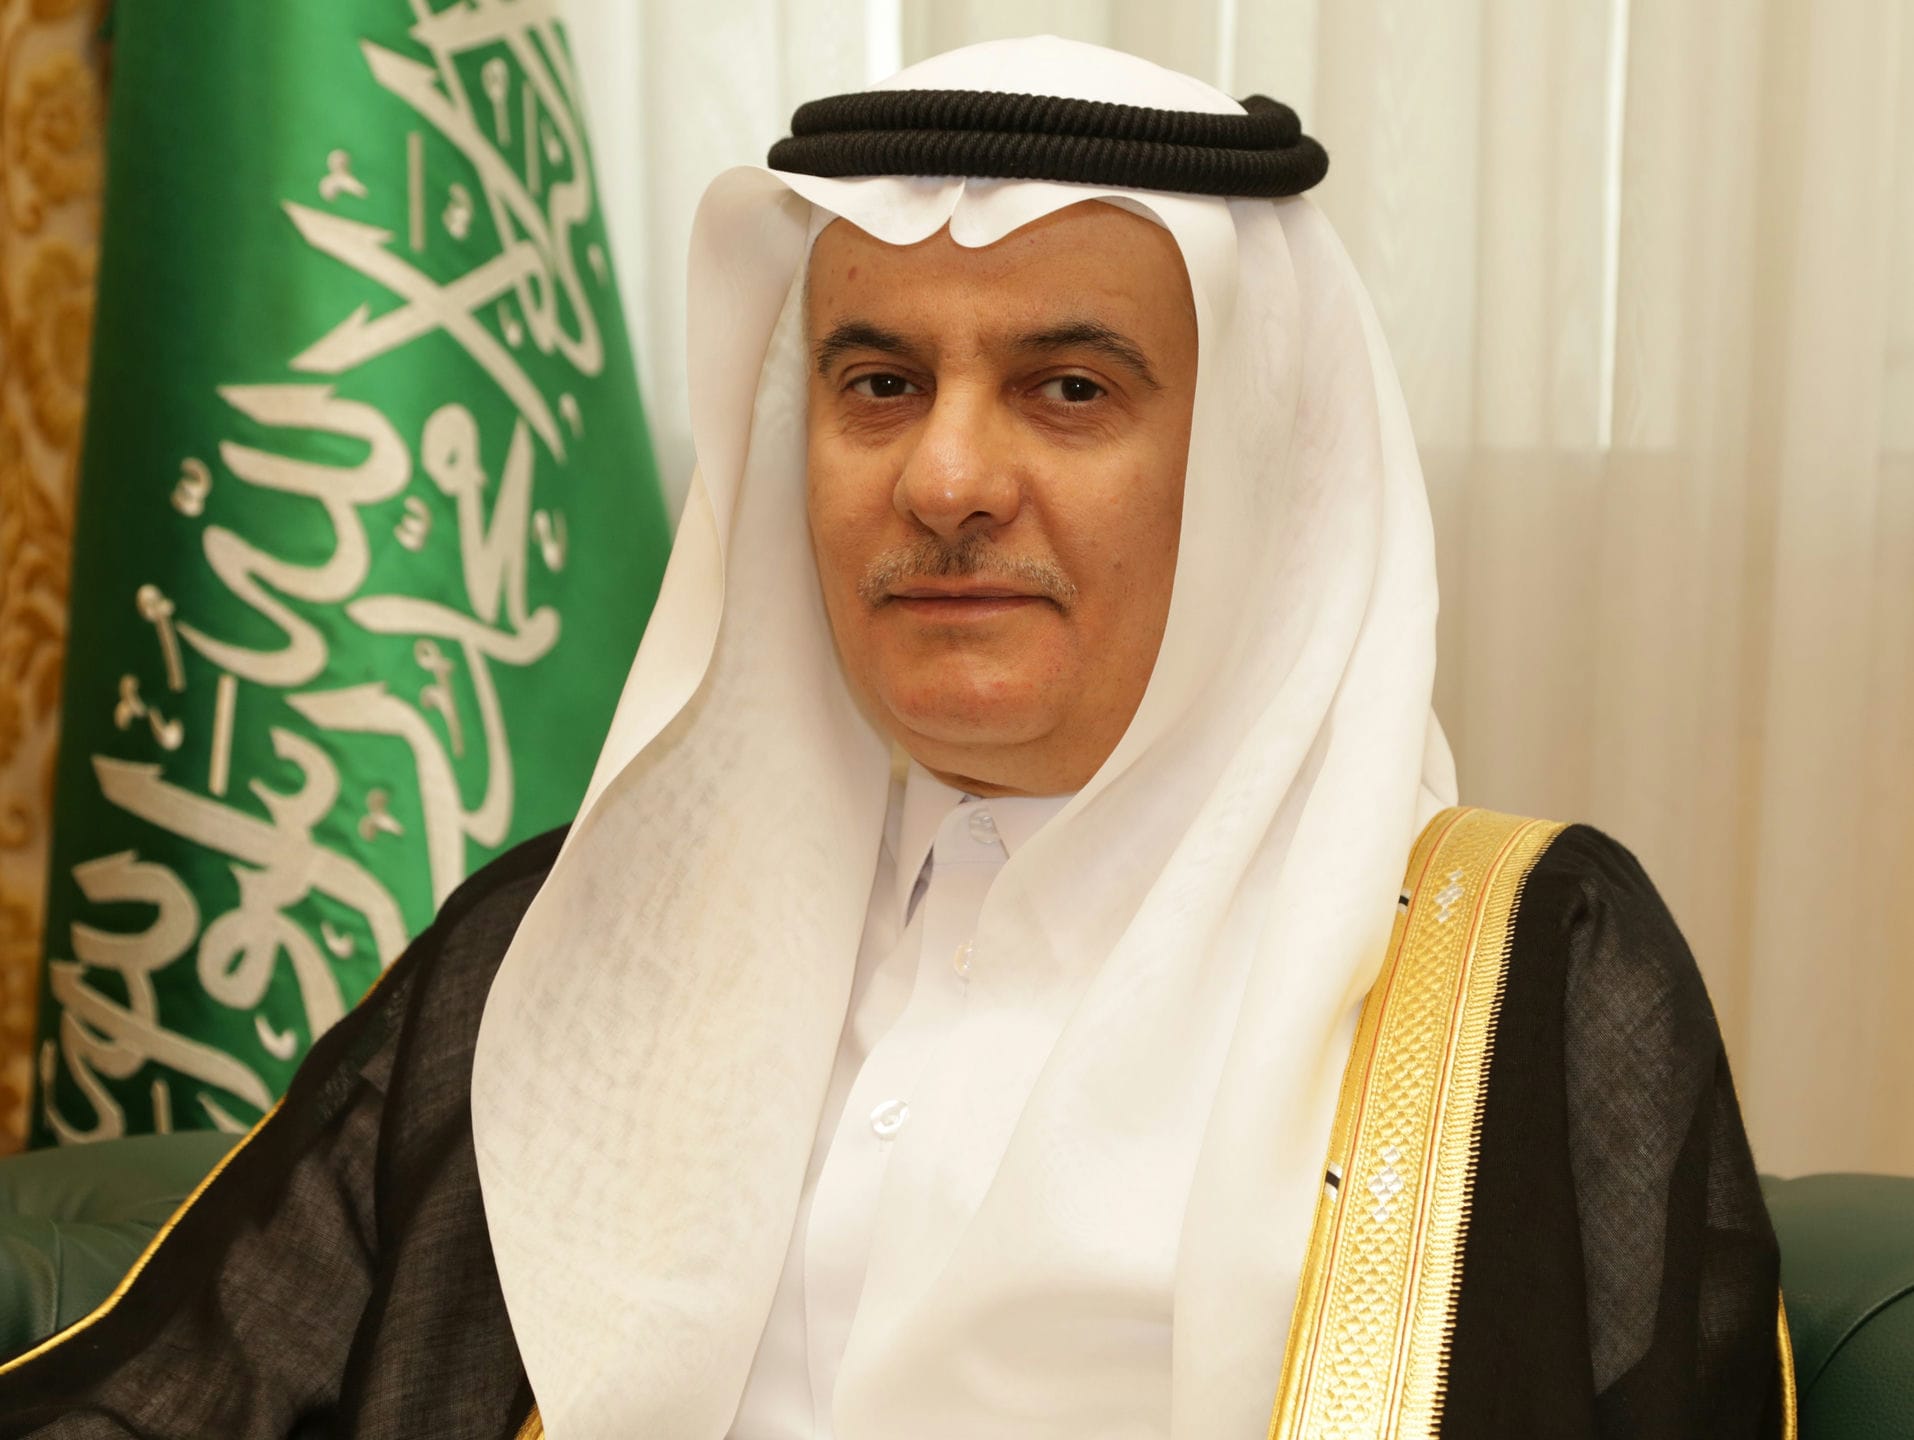 Eng. Abdul Rahman bin Abdul Mohsen Al-Fadhli